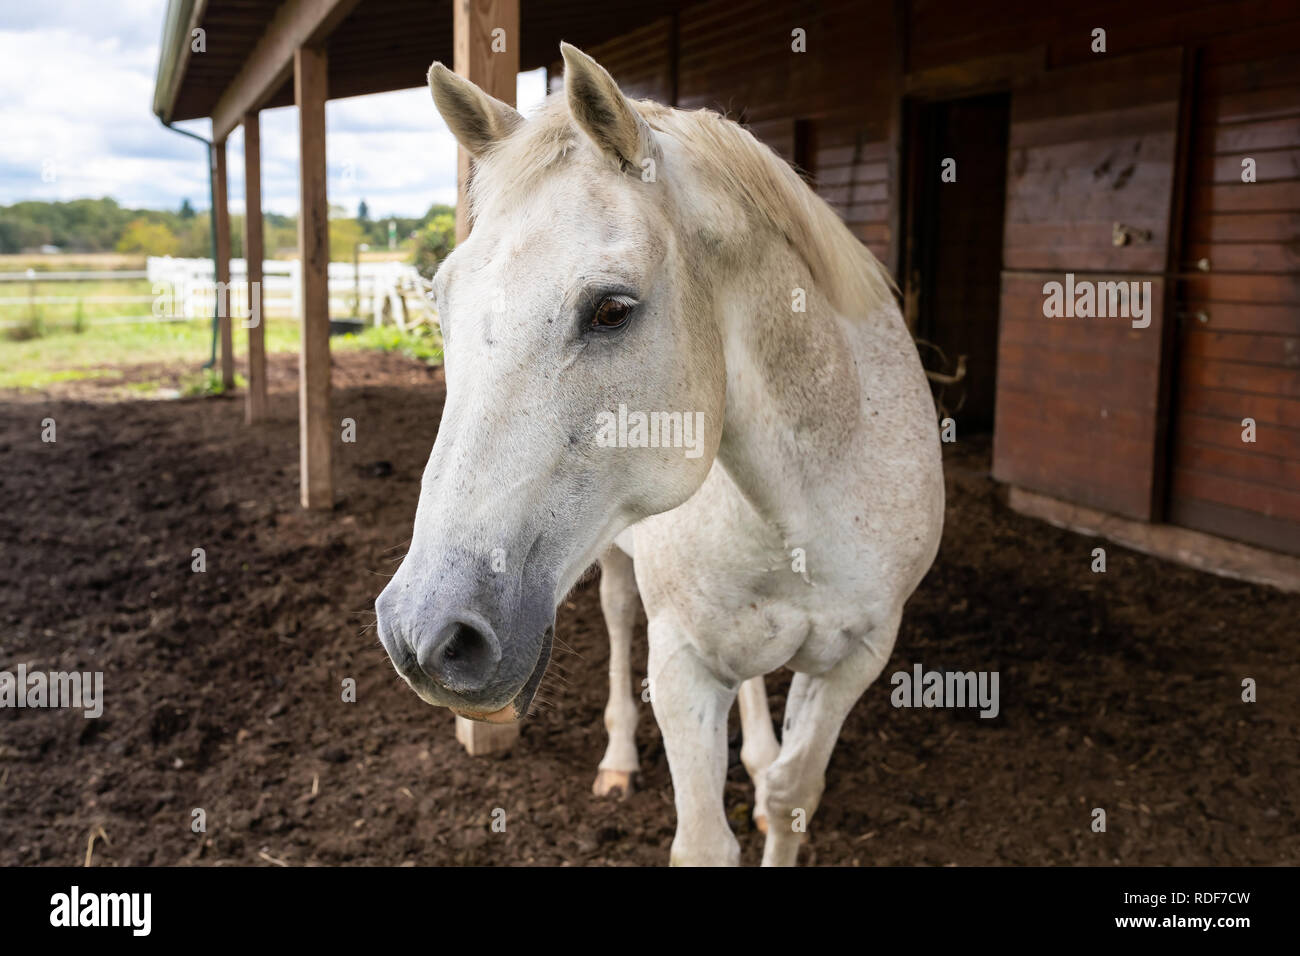 Eine merkwürdige weiße dapple Quarter Horse neugierig Ansätze außerhalb von der offenen Scheune. Sonnigen Sommertag im ländlichen Pennsylvania Landschaft Ackerland. Stockfoto